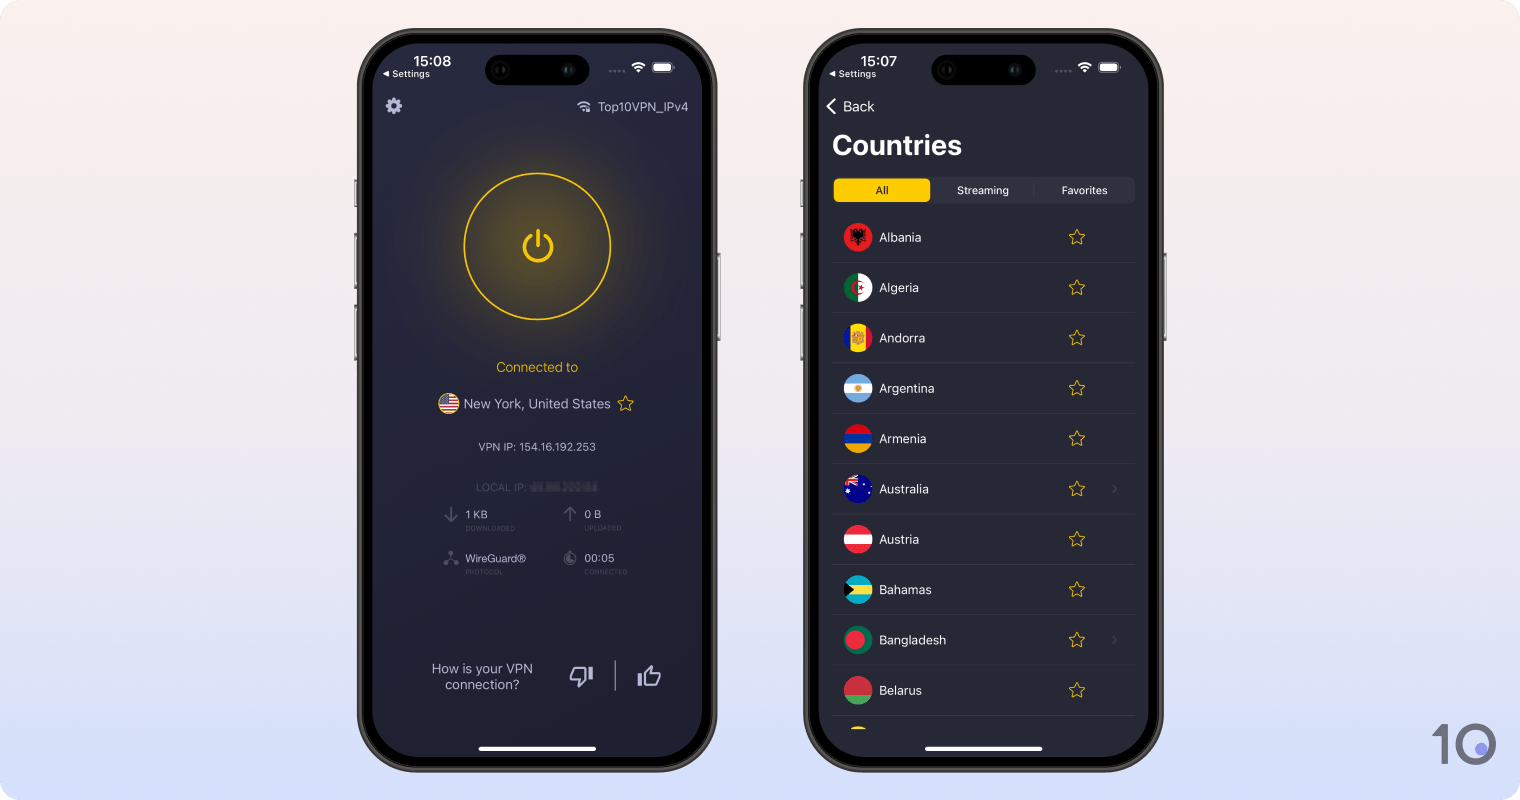 Cyberghost's VPN app for iOS